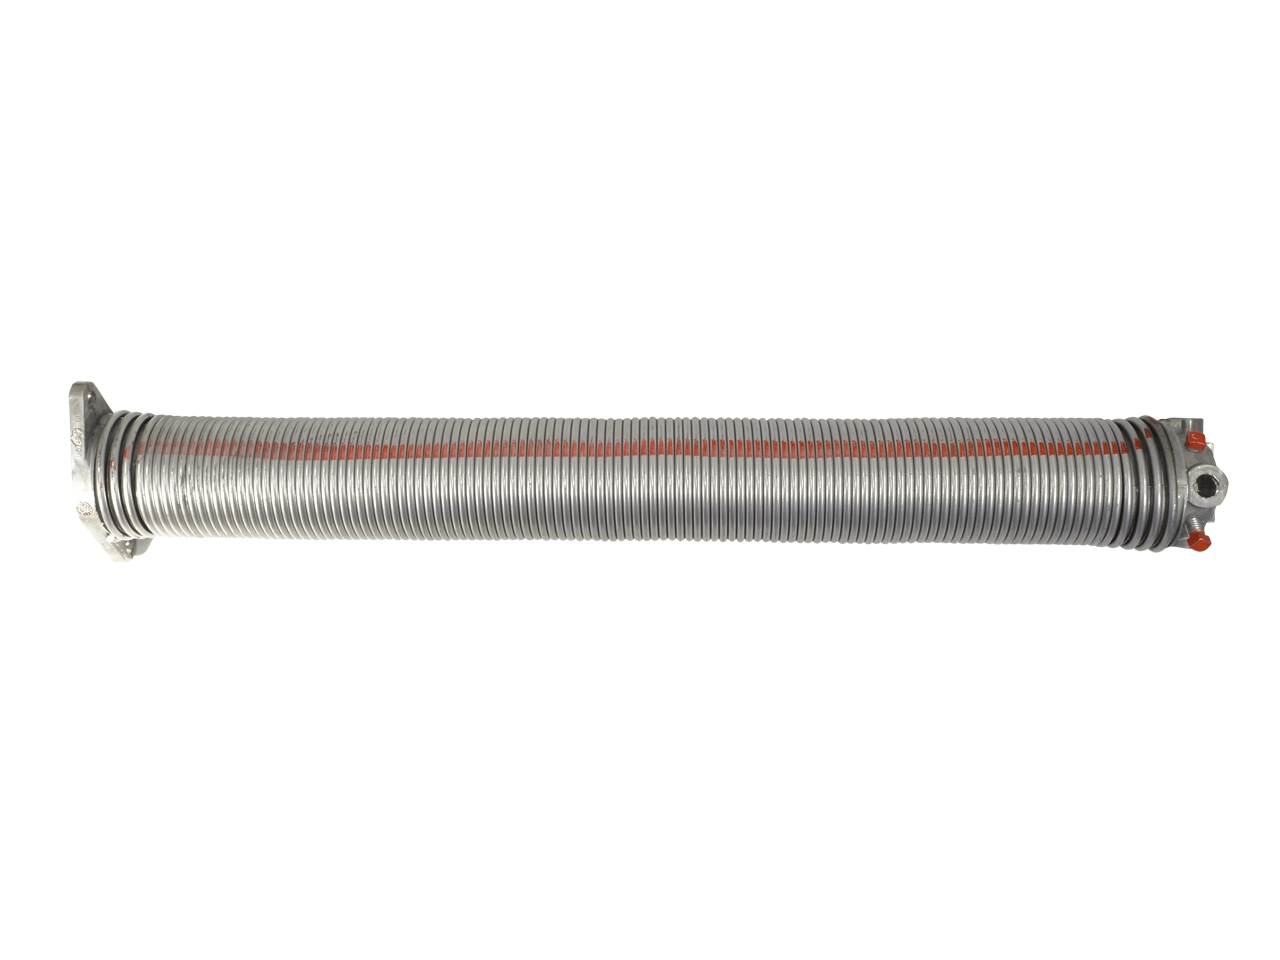 Torfeder, Innendurchmesser 95 mm, Drahtstärke 6,5 mm, Windung Links, mit Köpfen für Welle 25,4mm